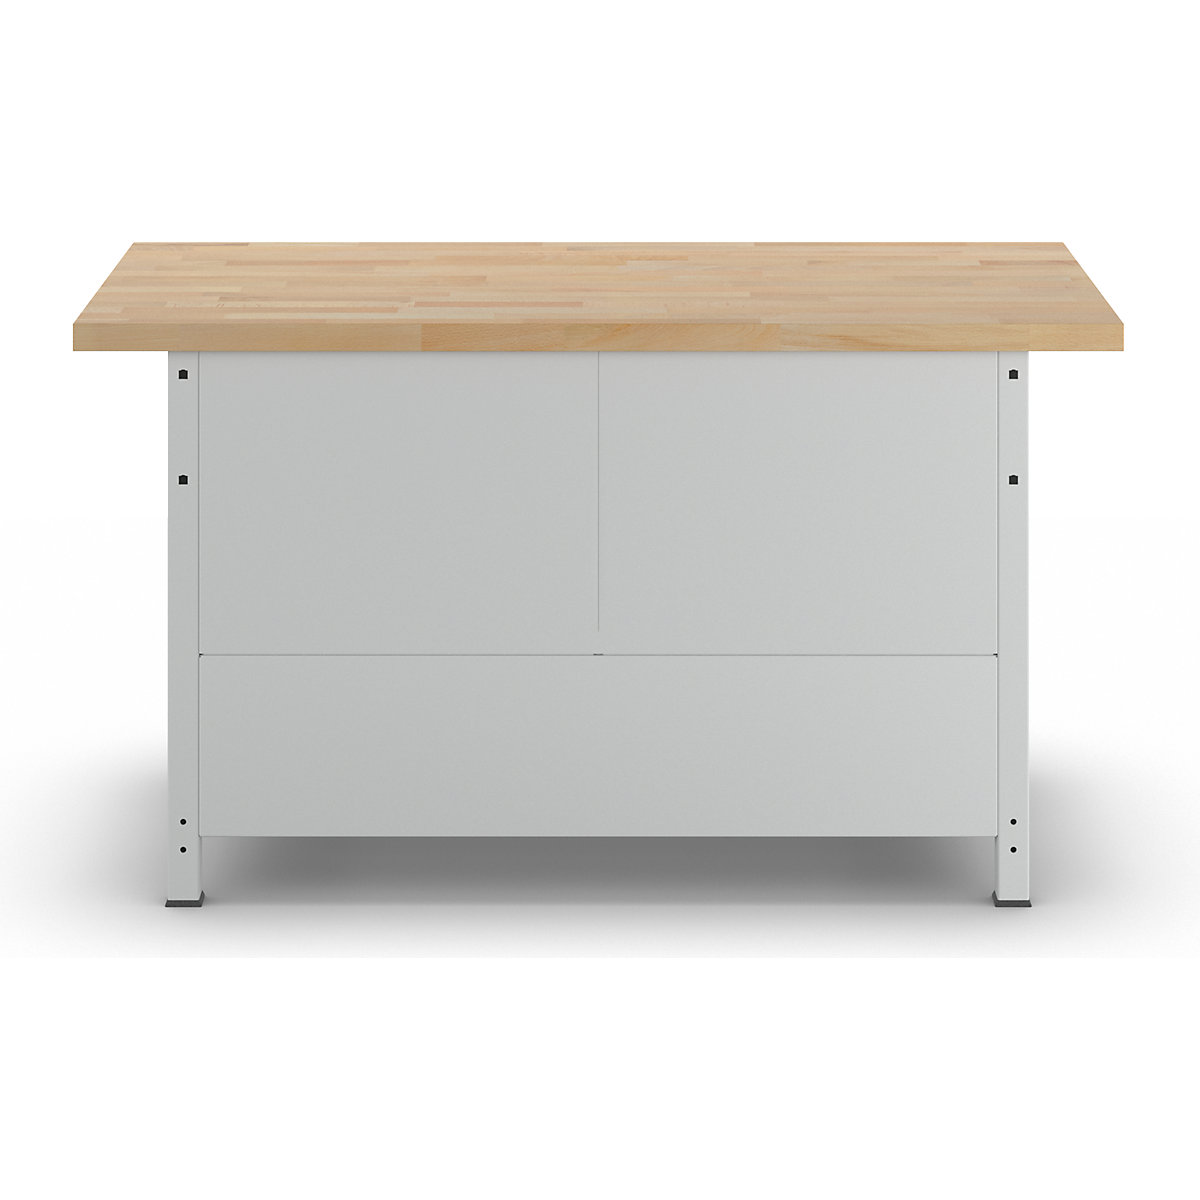 Stół warsztatowy, konstrukcja ramowa – RAU (Zdjęcie produktu 2)-1